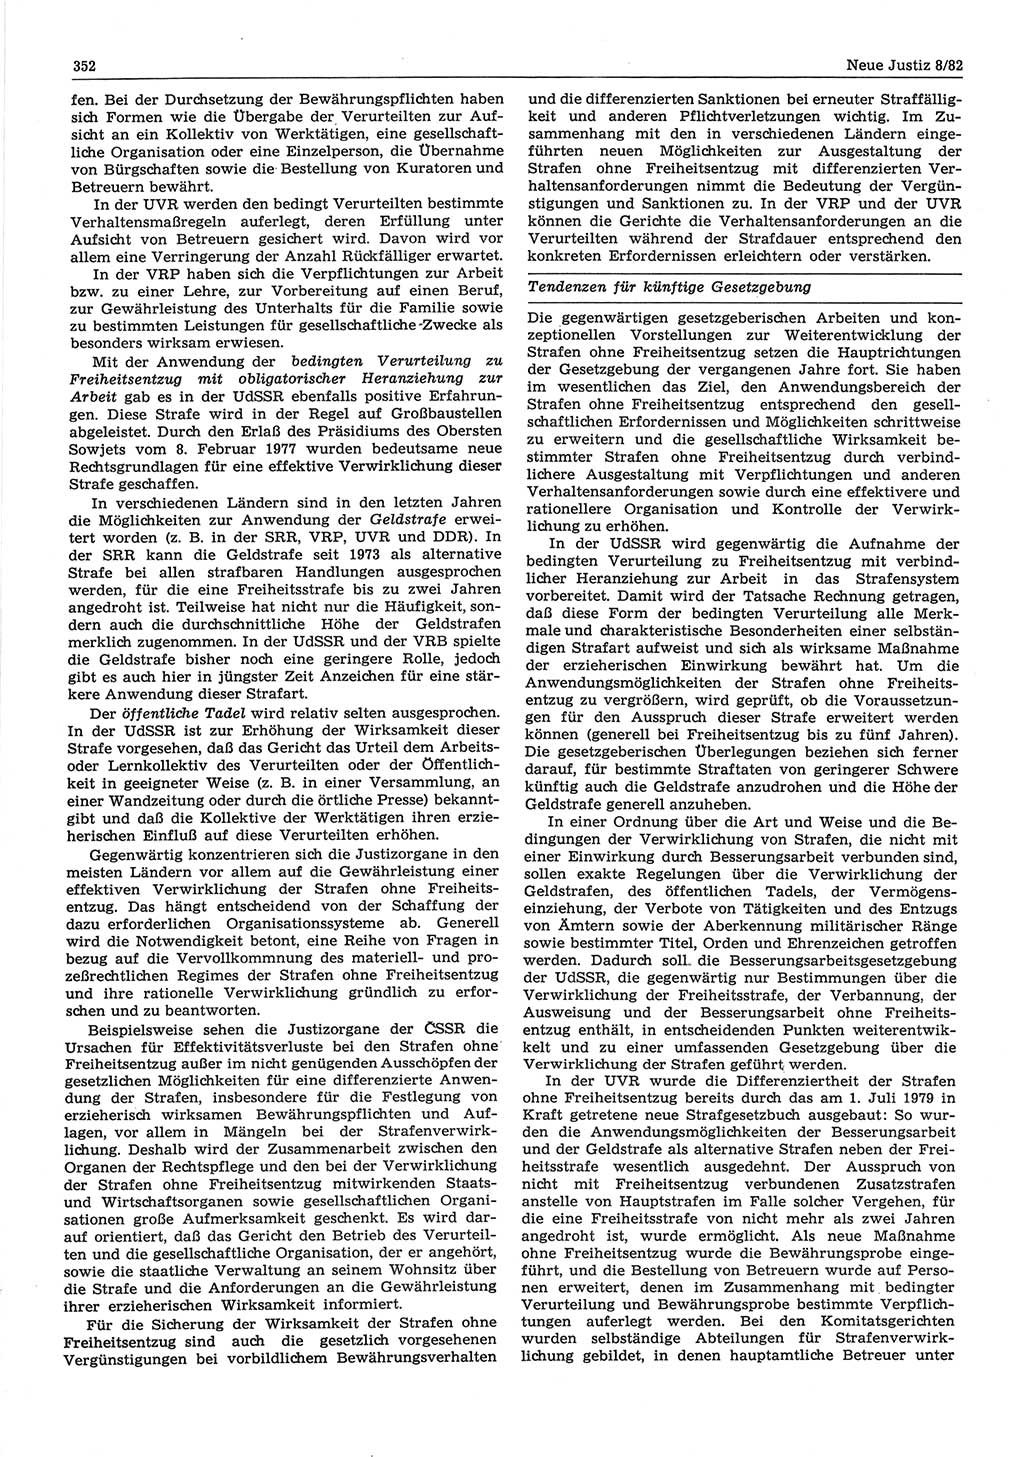 Neue Justiz (NJ), Zeitschrift für sozialistisches Recht und Gesetzlichkeit [Deutsche Demokratische Republik (DDR)], 36. Jahrgang 1982, Seite 352 (NJ DDR 1982, S. 352)